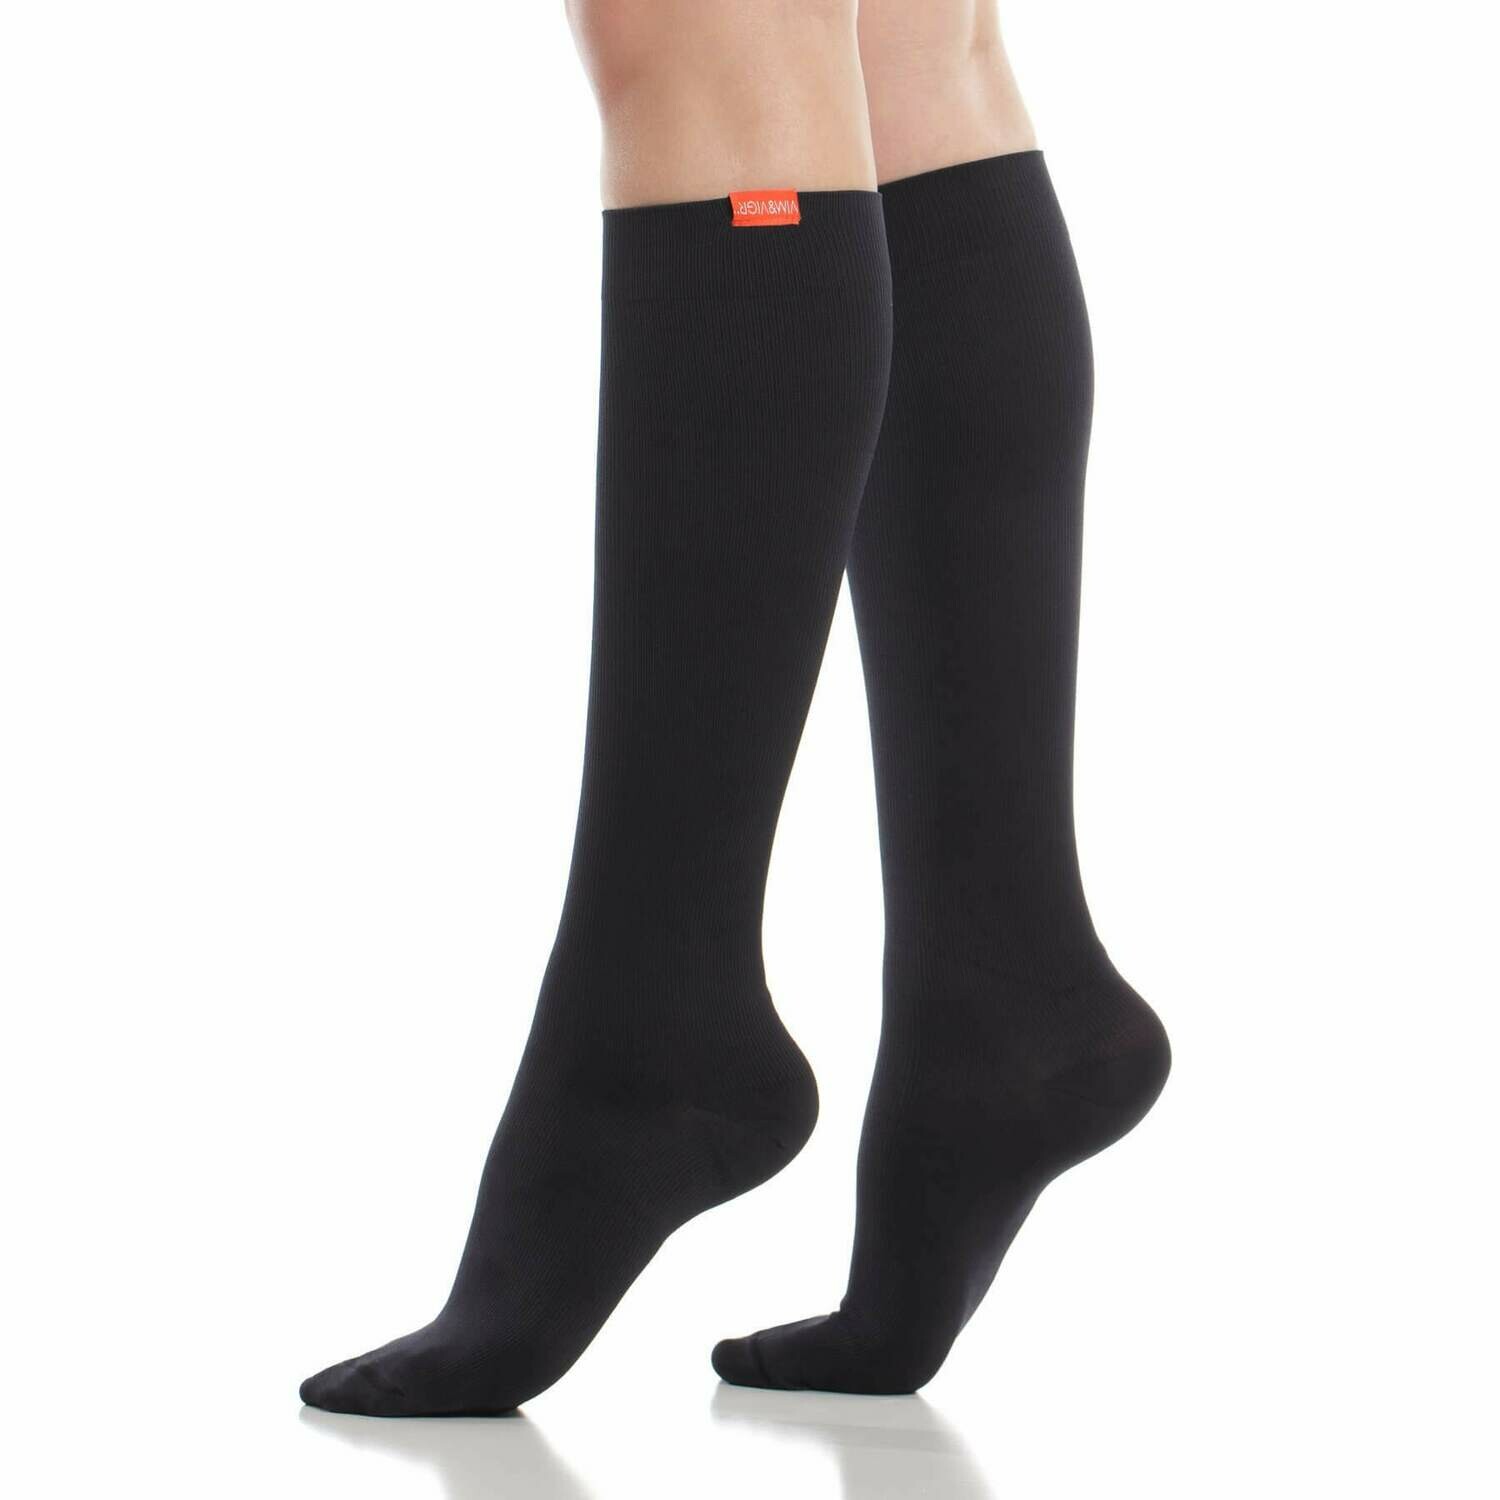 V&amp;V Black M/L Cotton 15-20mmHG Compression Socks